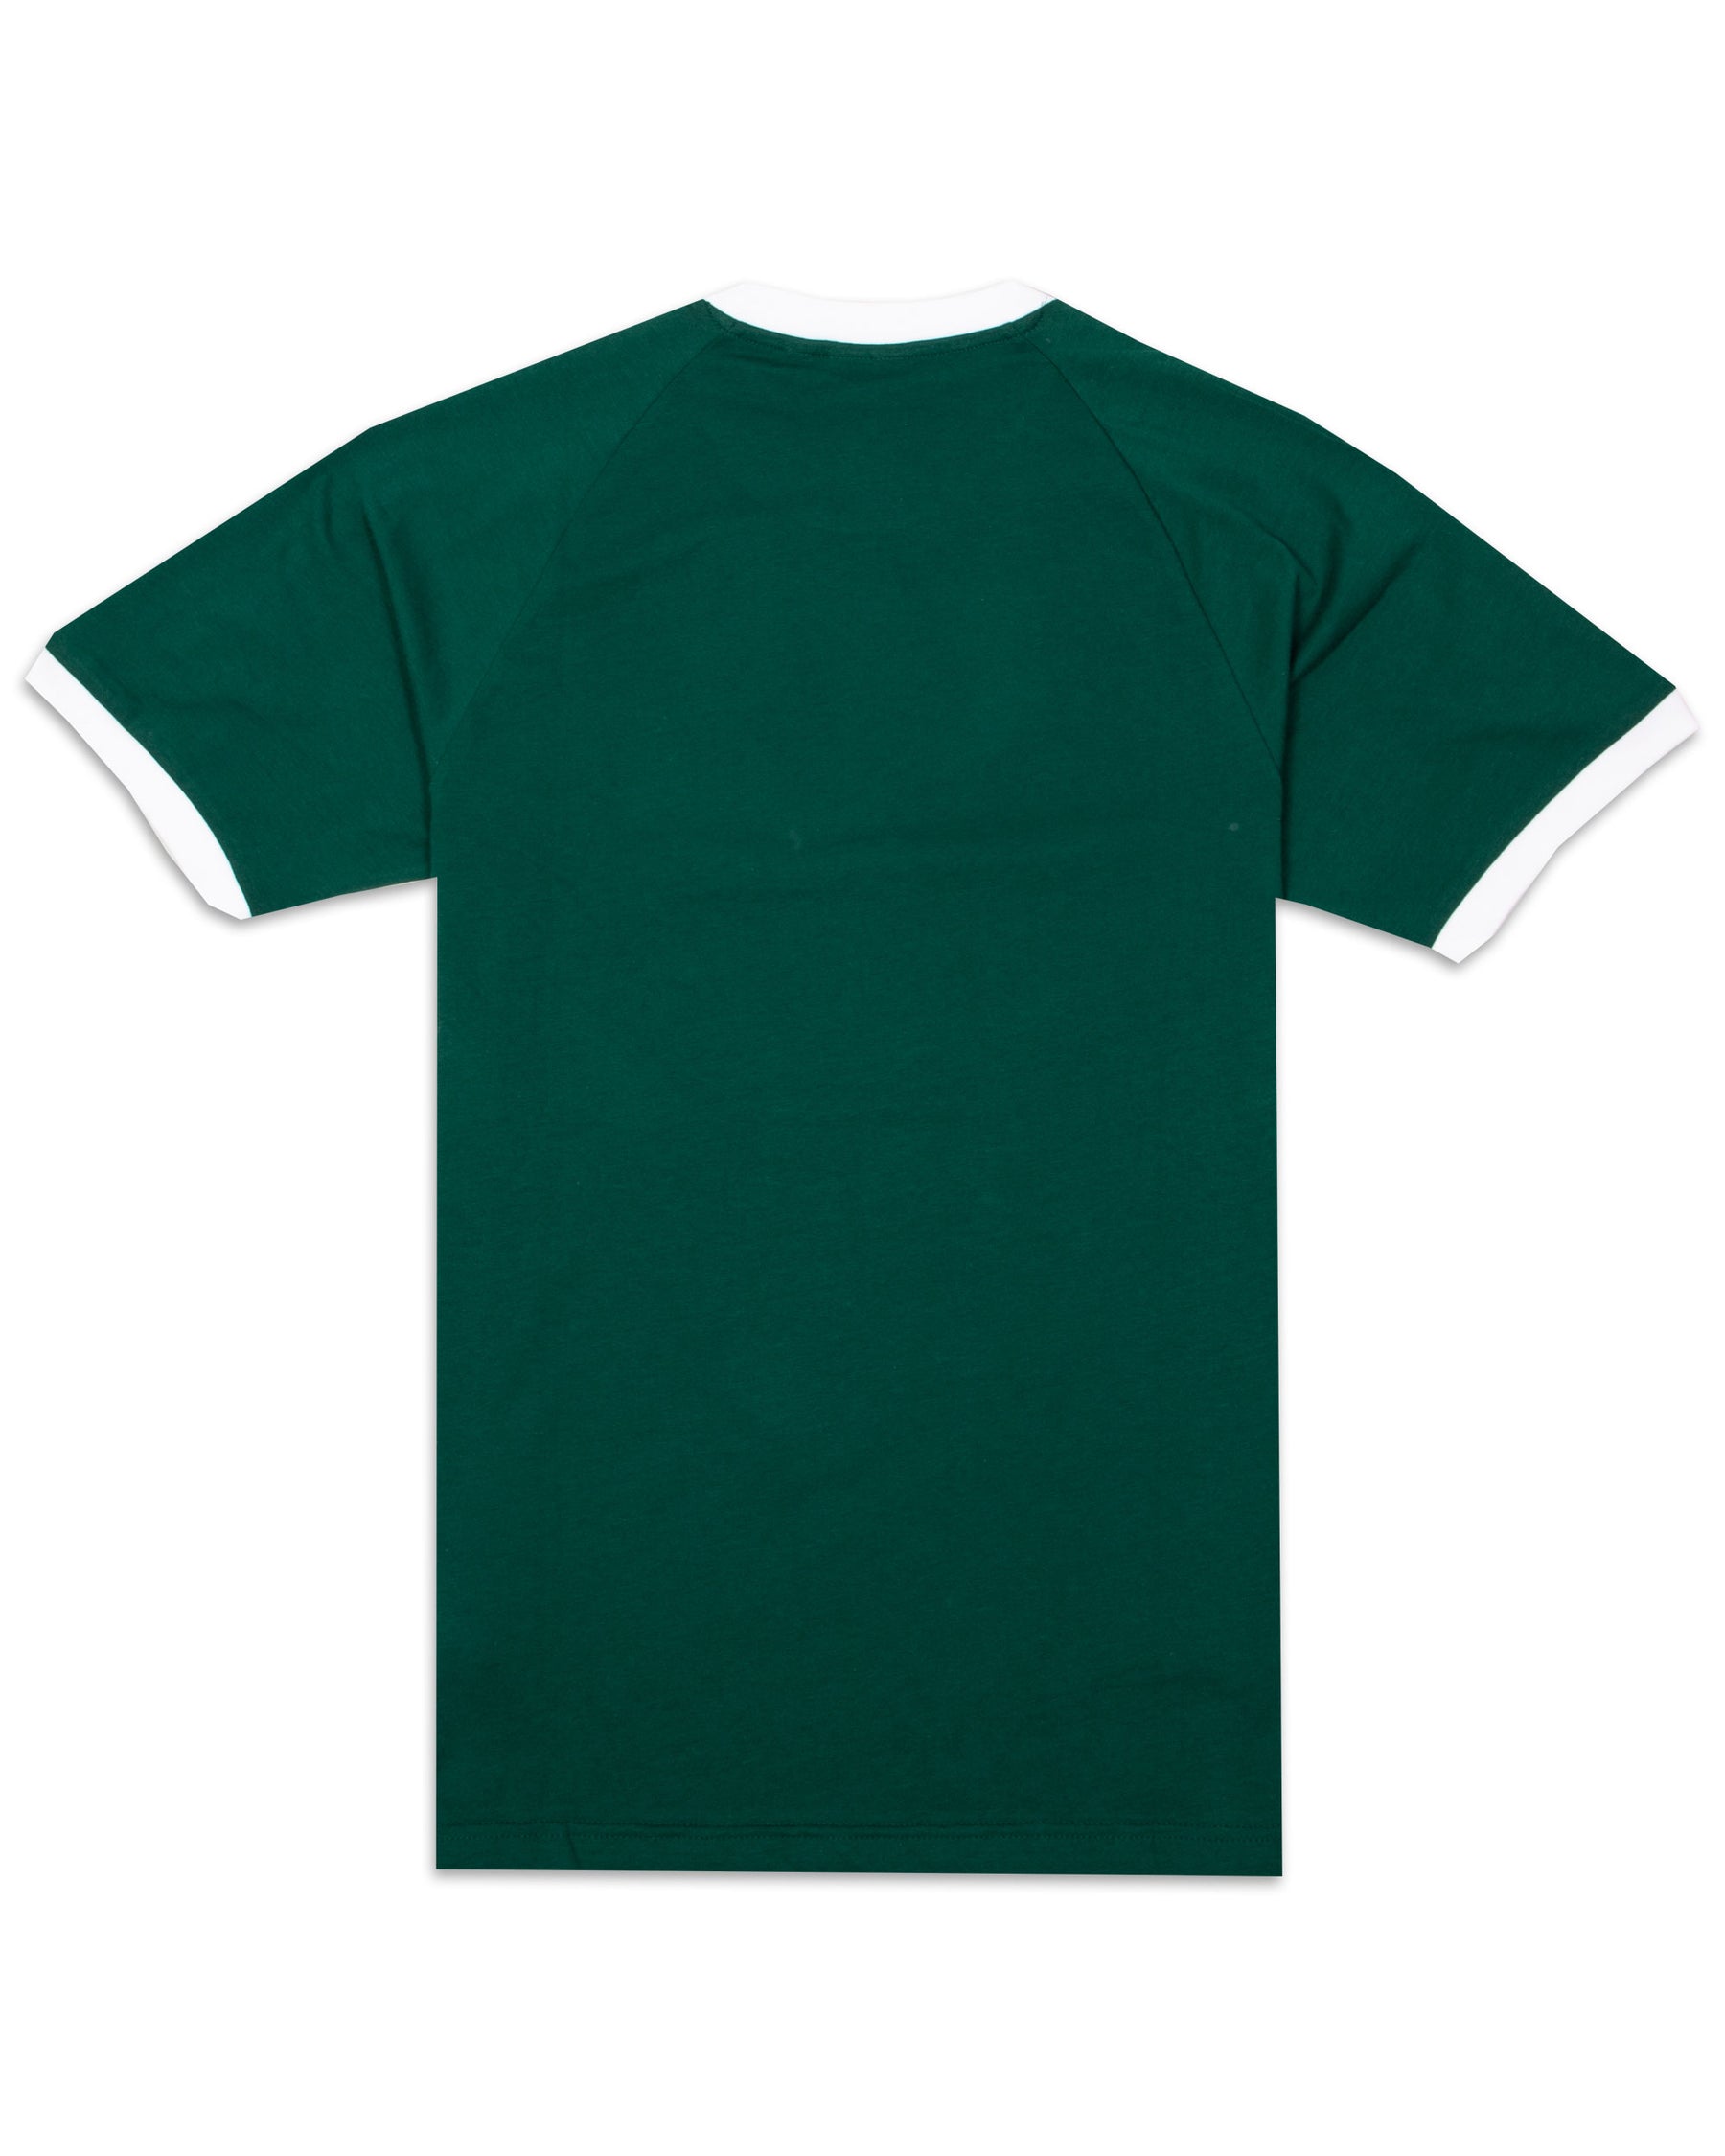 T-Shirt Uomo Adidas 3 Stripes Verde